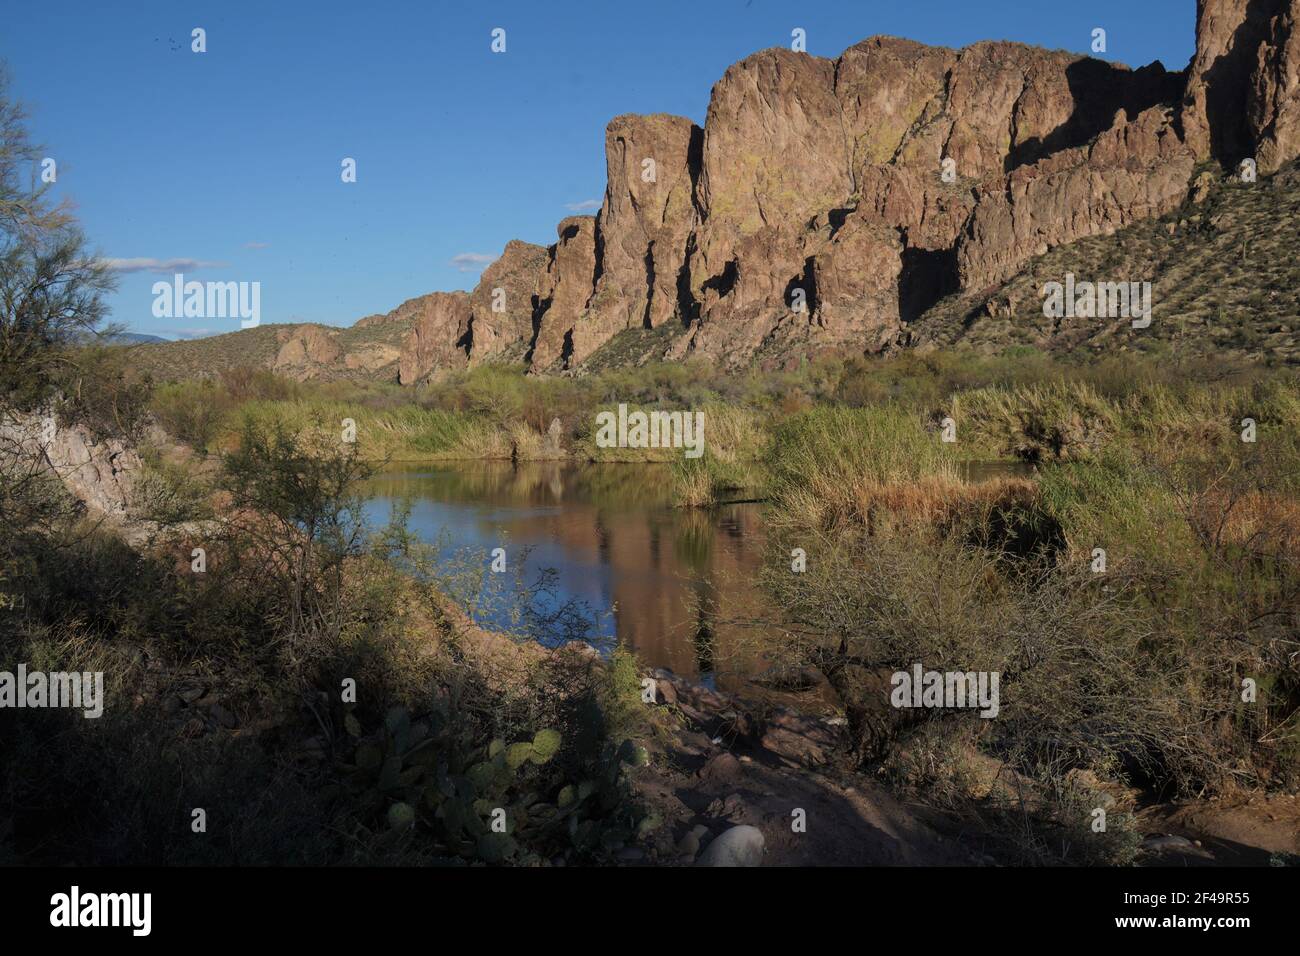 La bellezza abbonda sul fiume di sale inferiore vicino a Mesa, Arizona con le formazioni rocciose incredibili, il cactus di saguaro così come molte altre specie di flora Foto Stock